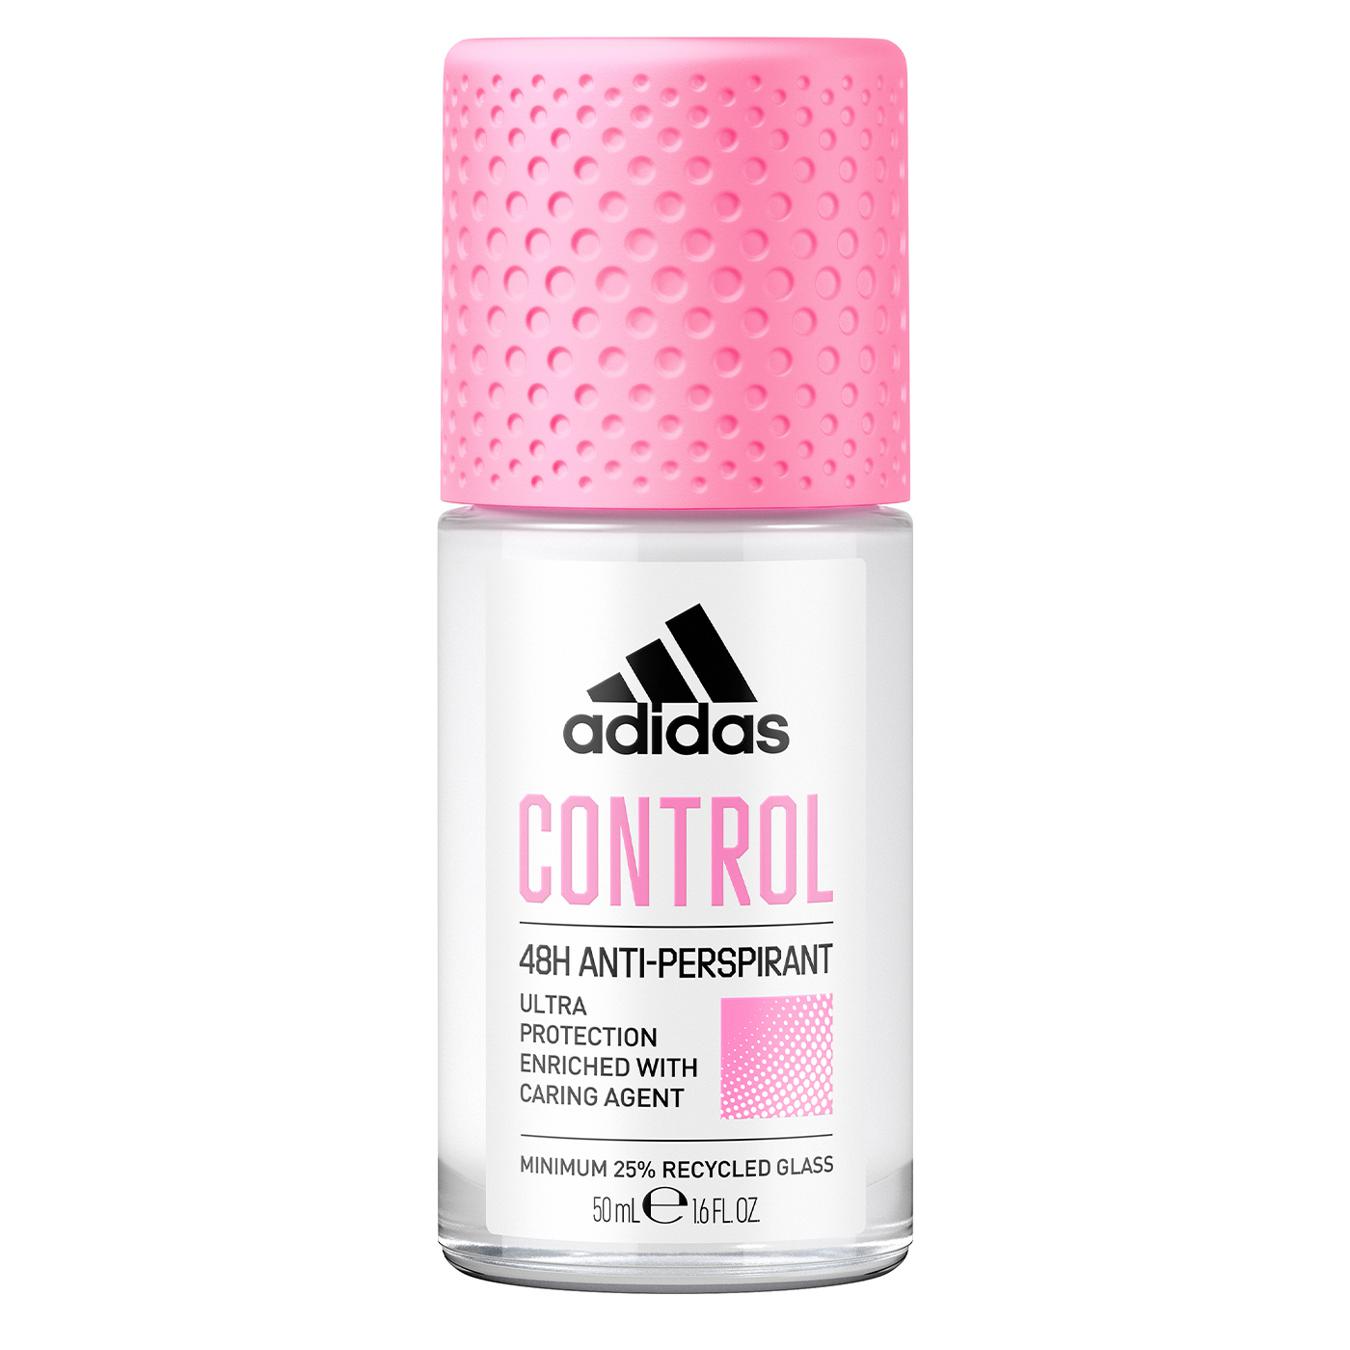 Adidas control ball deodorant for women 50 ml